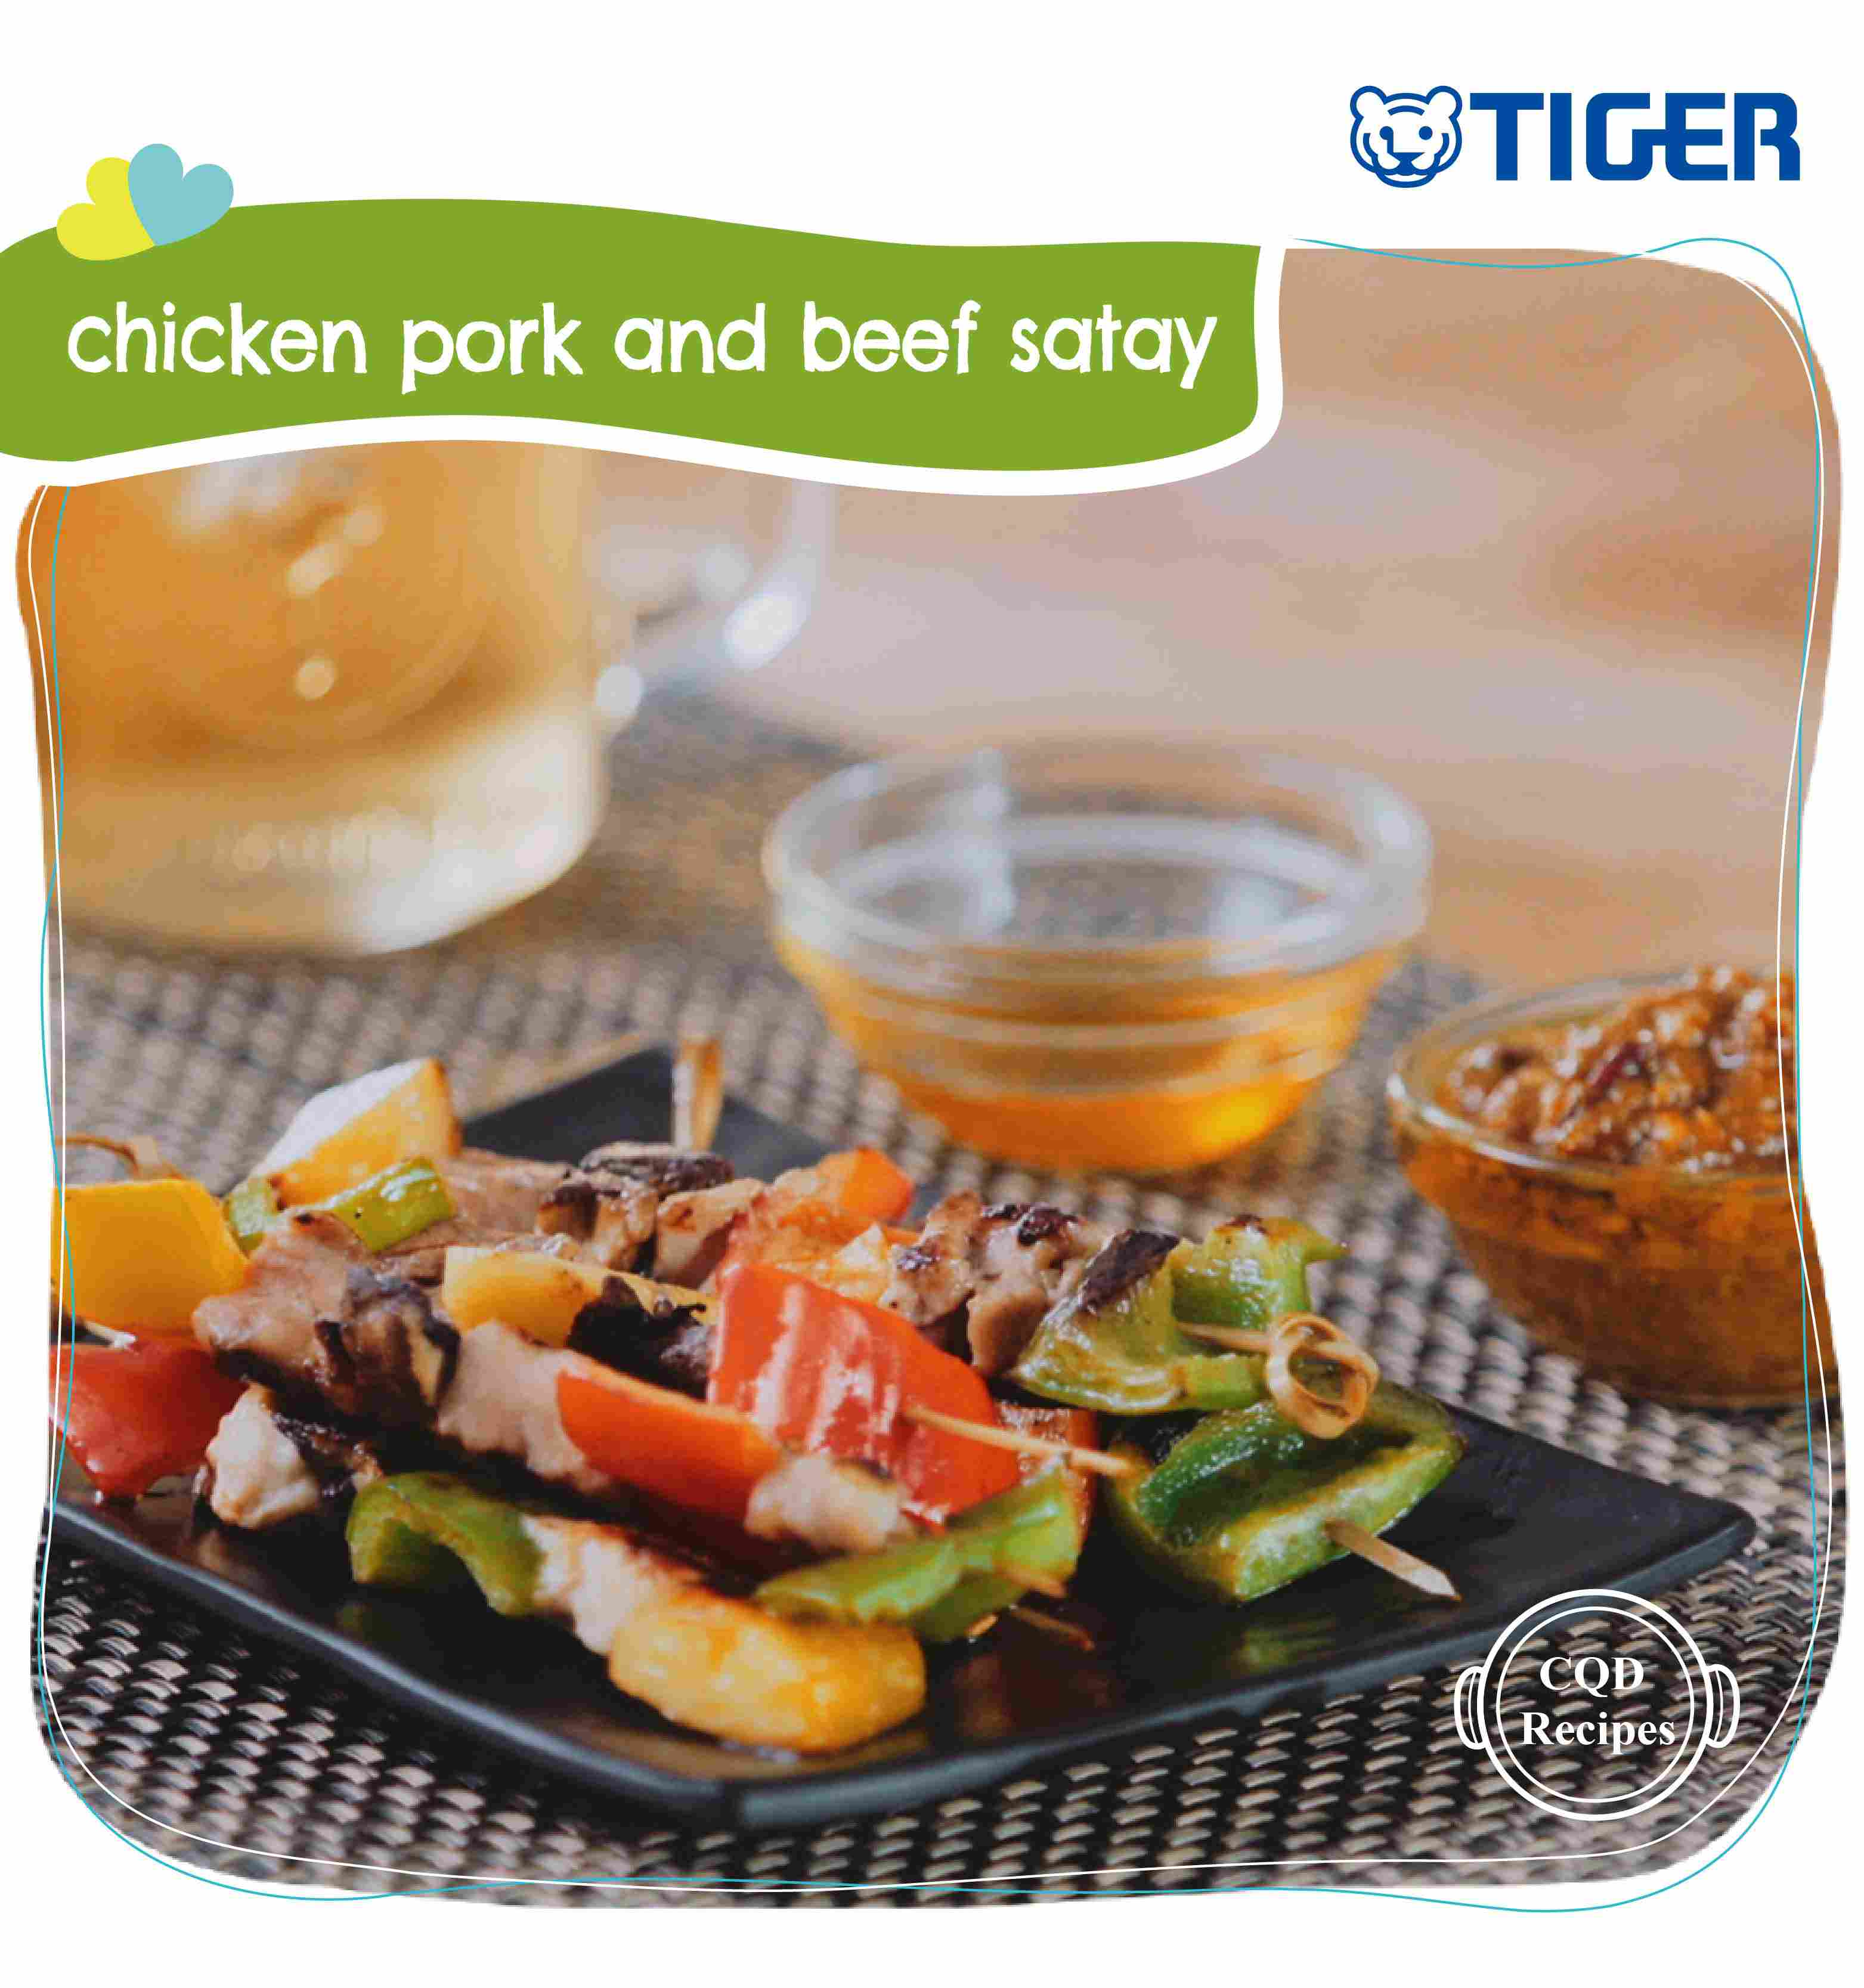 tiger-recipe-chicken-pork-beef-satay-en-1.jpg (277 KB)